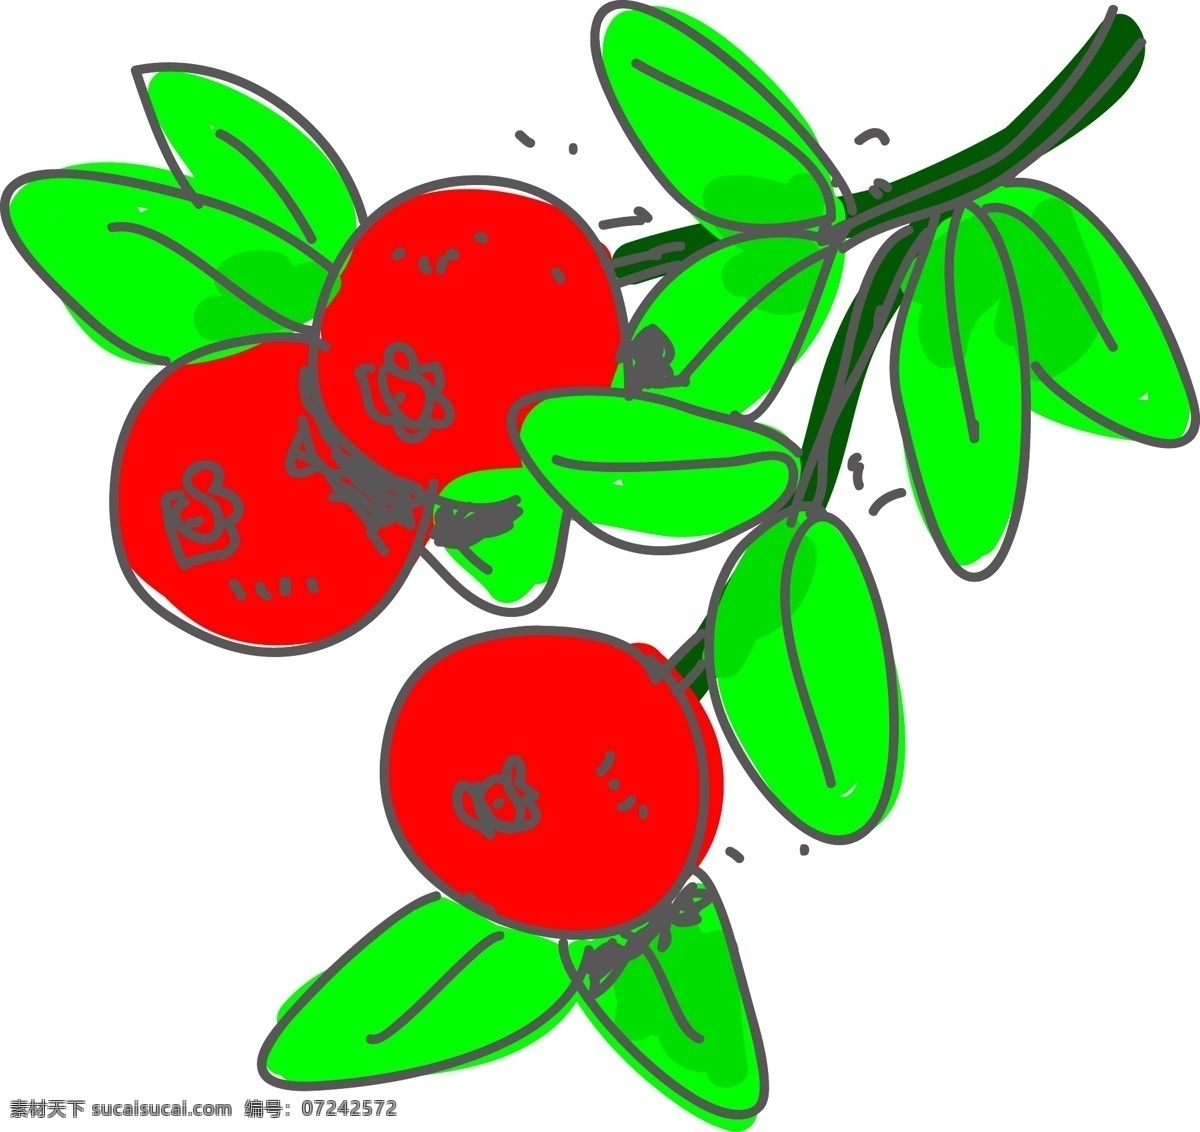 涂鸦 蔓 越 莓 矢量 手绘蔓越莓 涂鸦蔓越莓 红莓 红色 红色蔓越莓 绿色 绿色叶子 绿叶 涂鸦水果 手绘水果